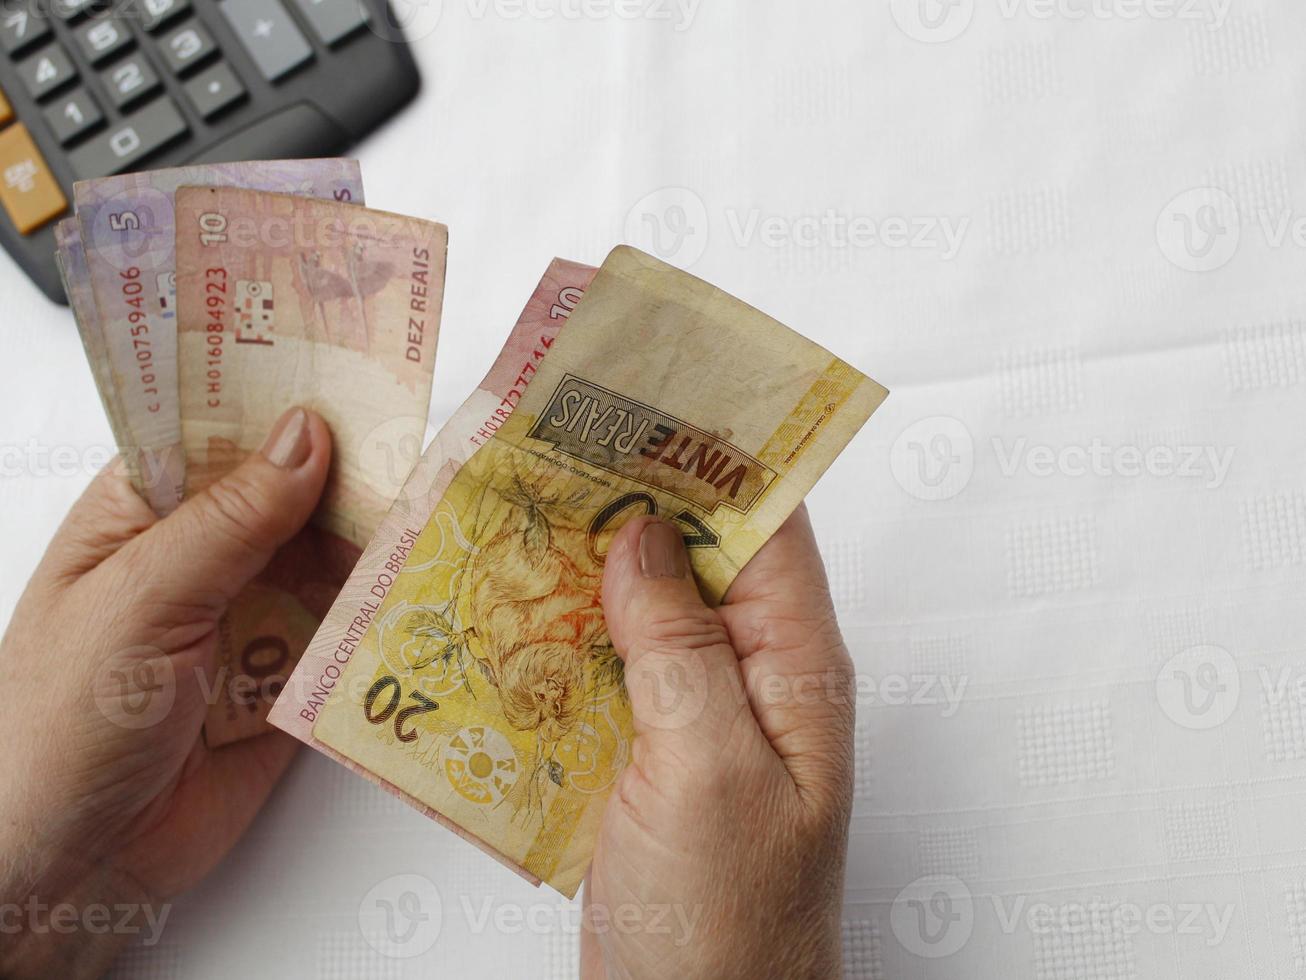 Fotografía para temas económicos y financieros con dinero brasileño. foto